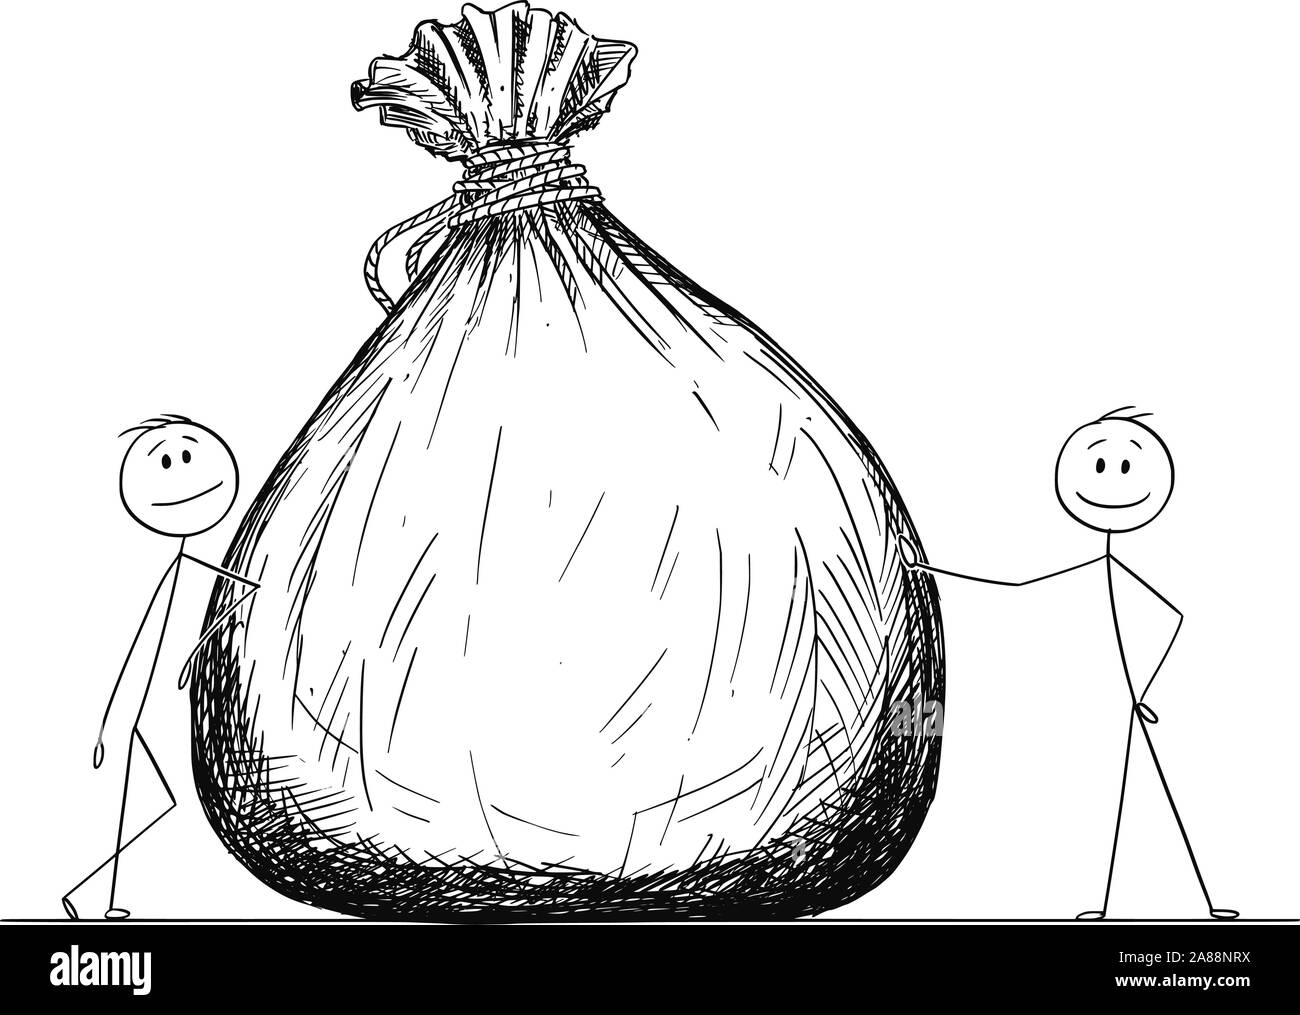 Vector cartoon stick figure dessin illustration conceptuelle de deux hommes d'affaires ou posant avec un gros sac ou sac de transport de l'argent. Illustration de Vecteur